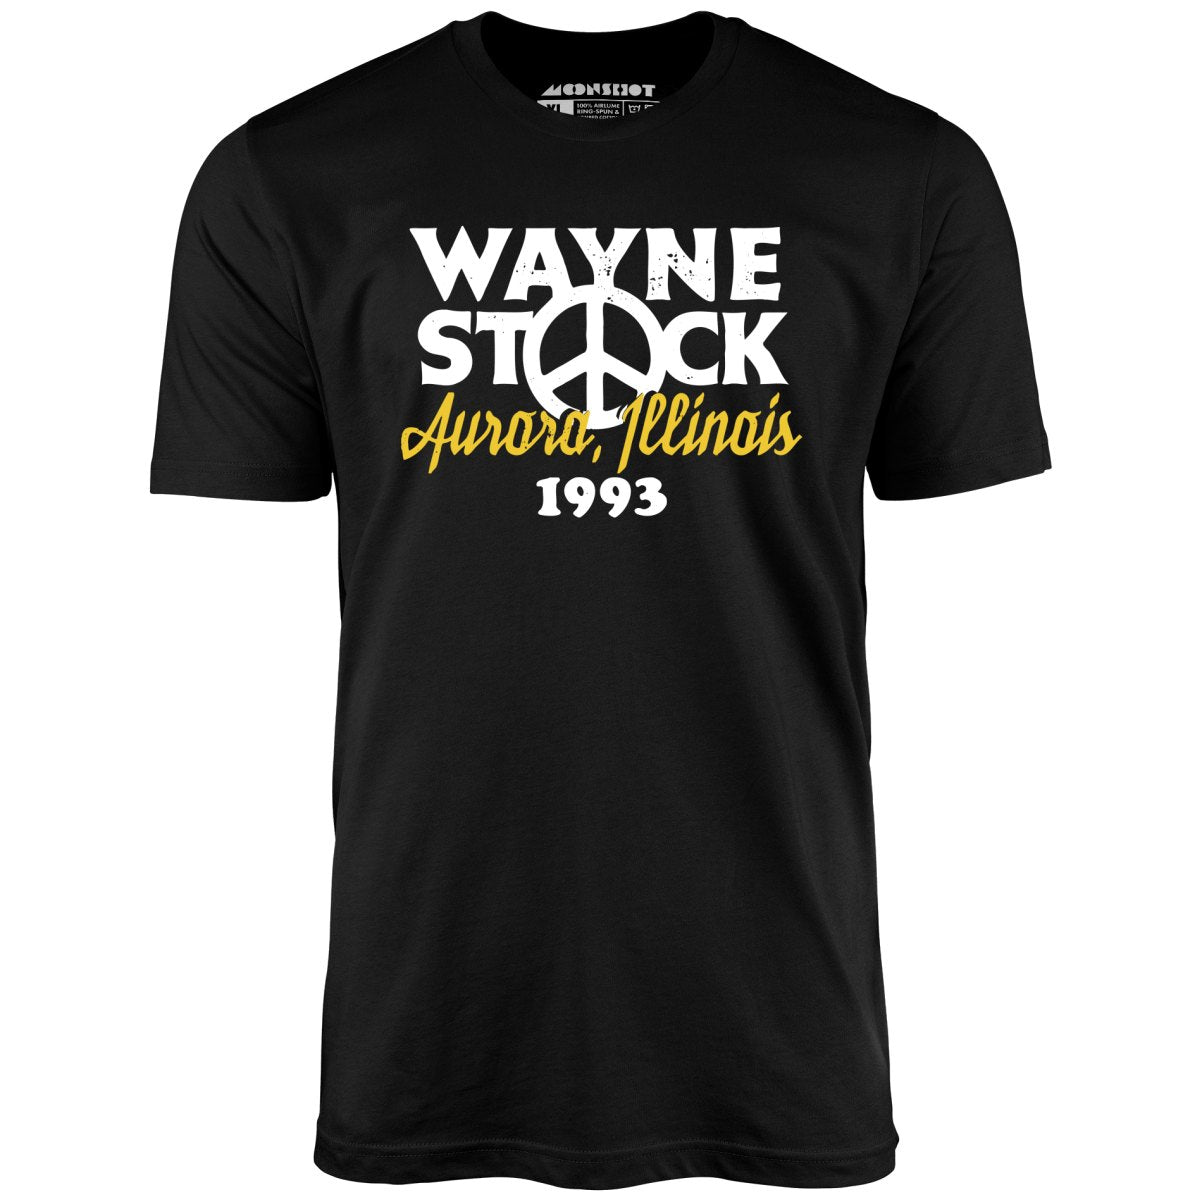 Waynestock 1993 - Unisex T-Shirt